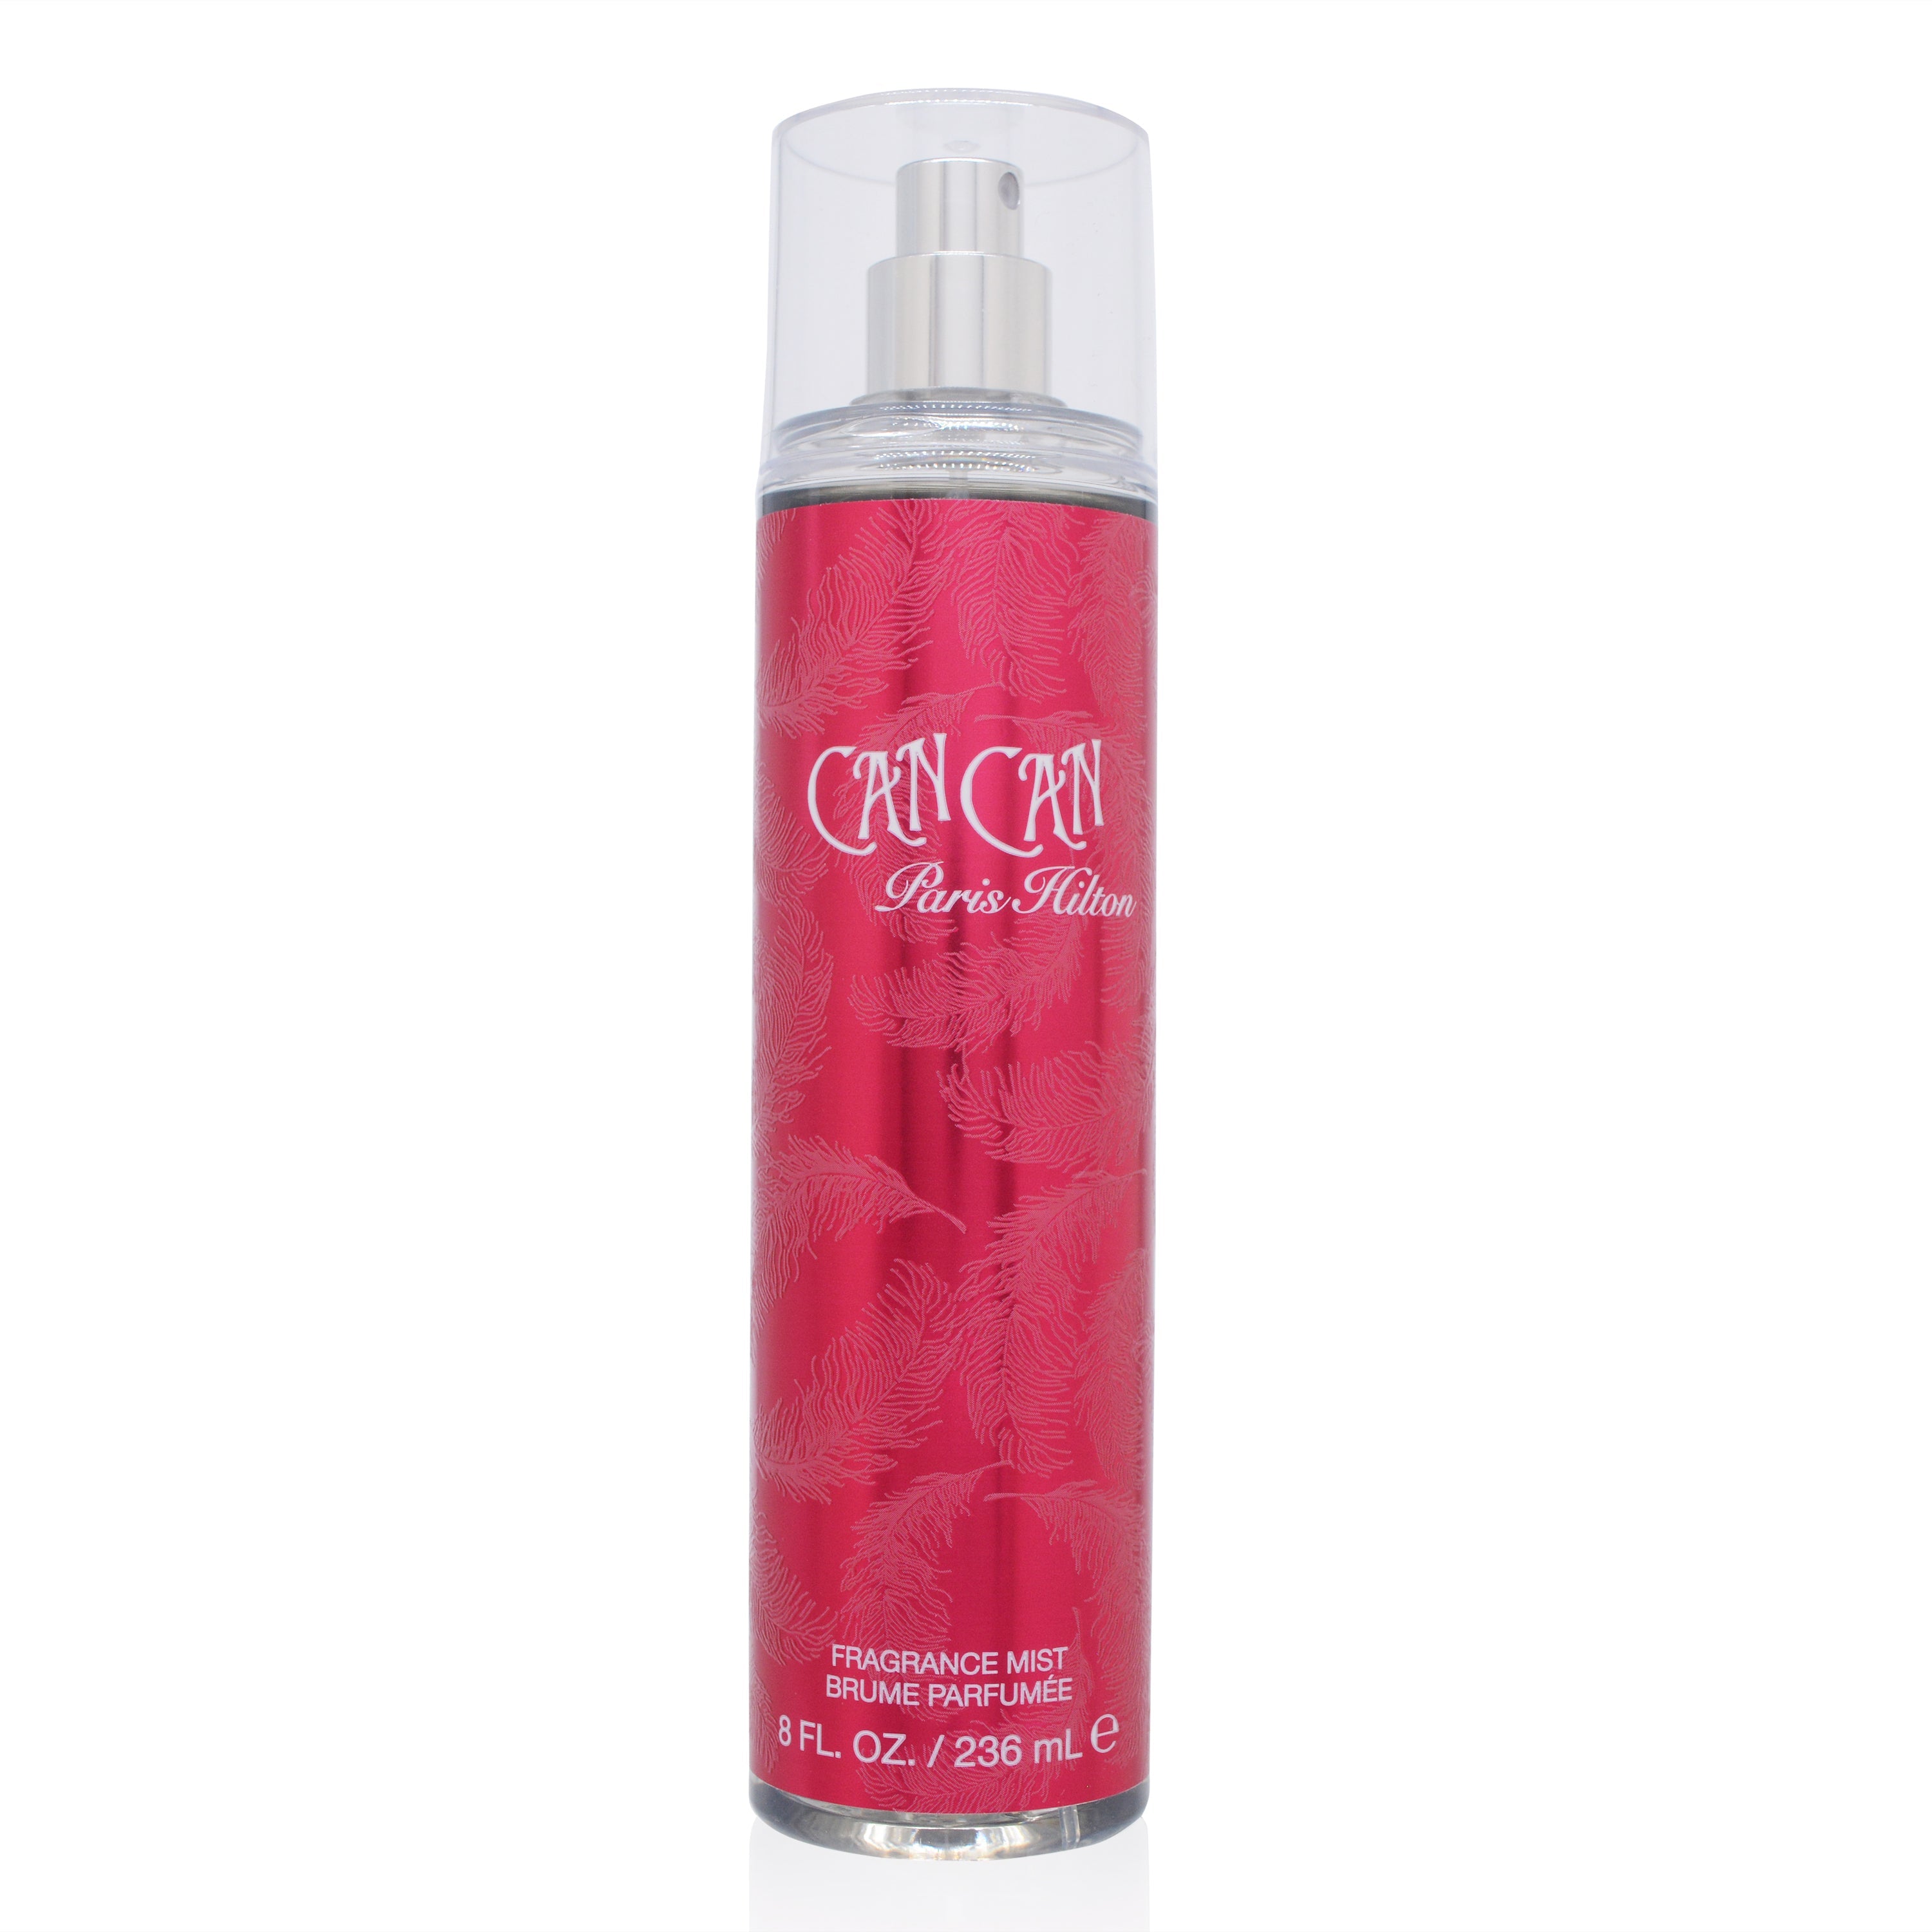 Can Can Paris Hilton Fragrance Mist Spray 8.0 Oz (236 Ml) (W)